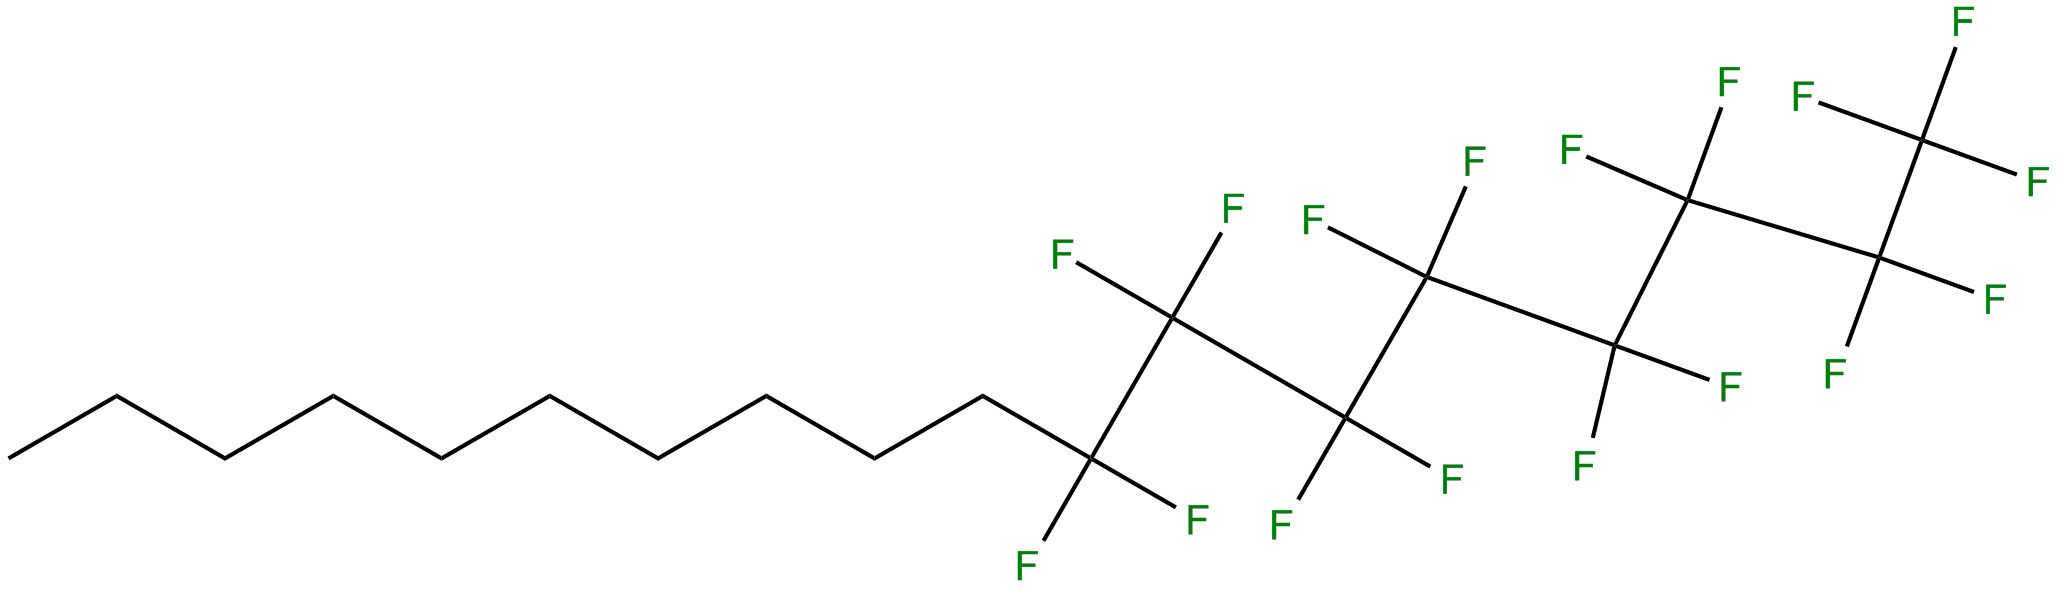 Image of 1,1,1,2,2,3,3,4,4,5,5,6,6,7,7,8,8-heptadecafluorooctadecane